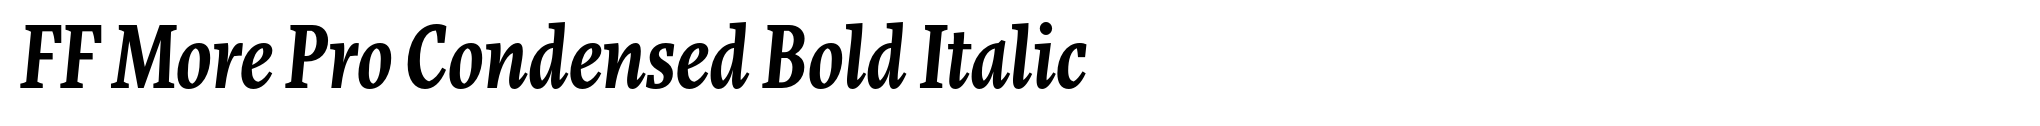 FF More Pro Condensed Bold Italic image